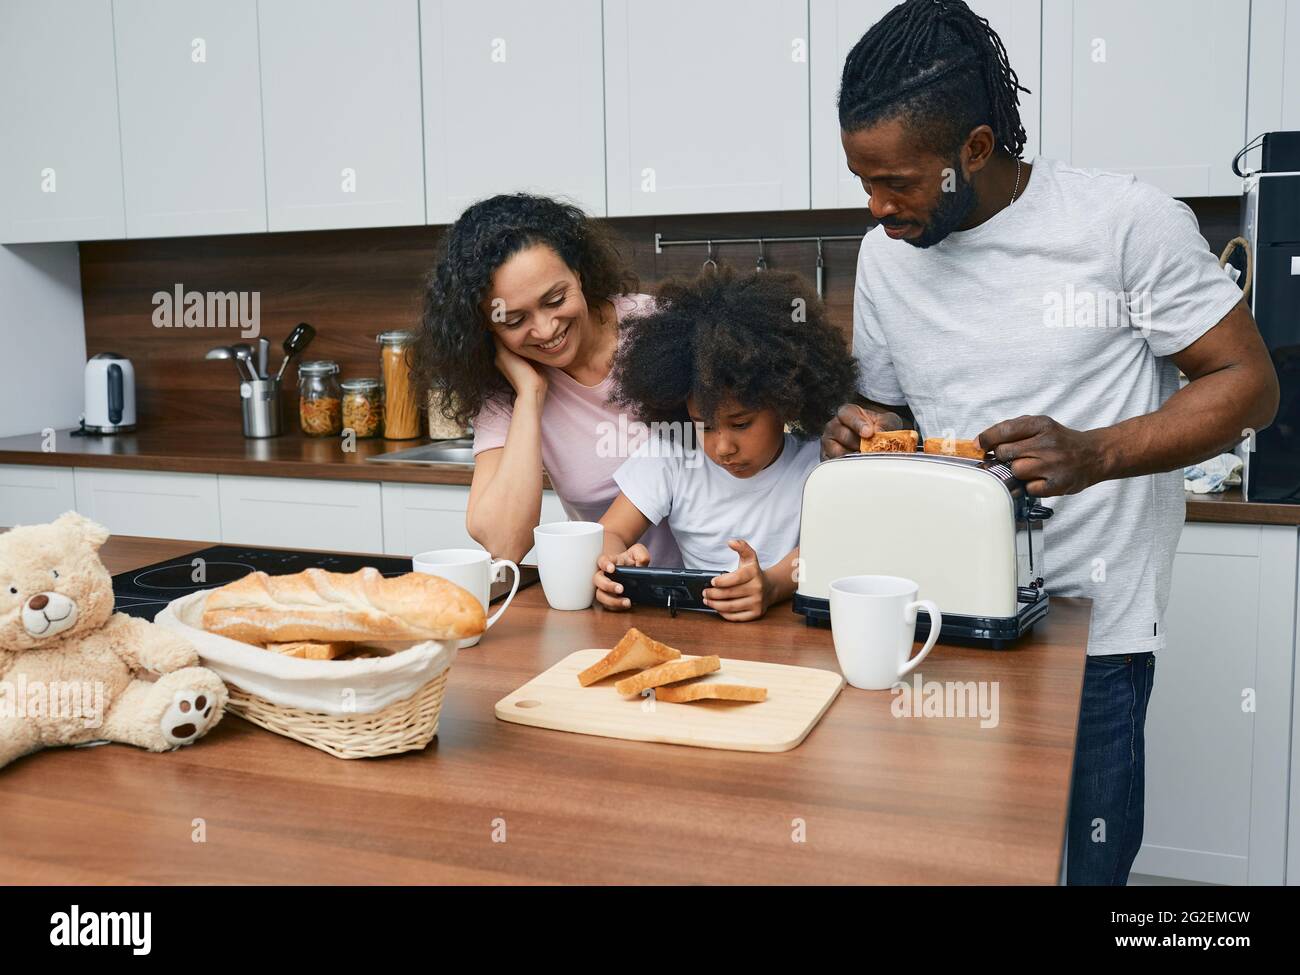 Le père, la mère et la petite fille préparent la nourriture dans la cuisine de leur maison. Recette de plat de recherche d'enfant sur Internet en utilisant un smartphone pour sa famille Banque D'Images